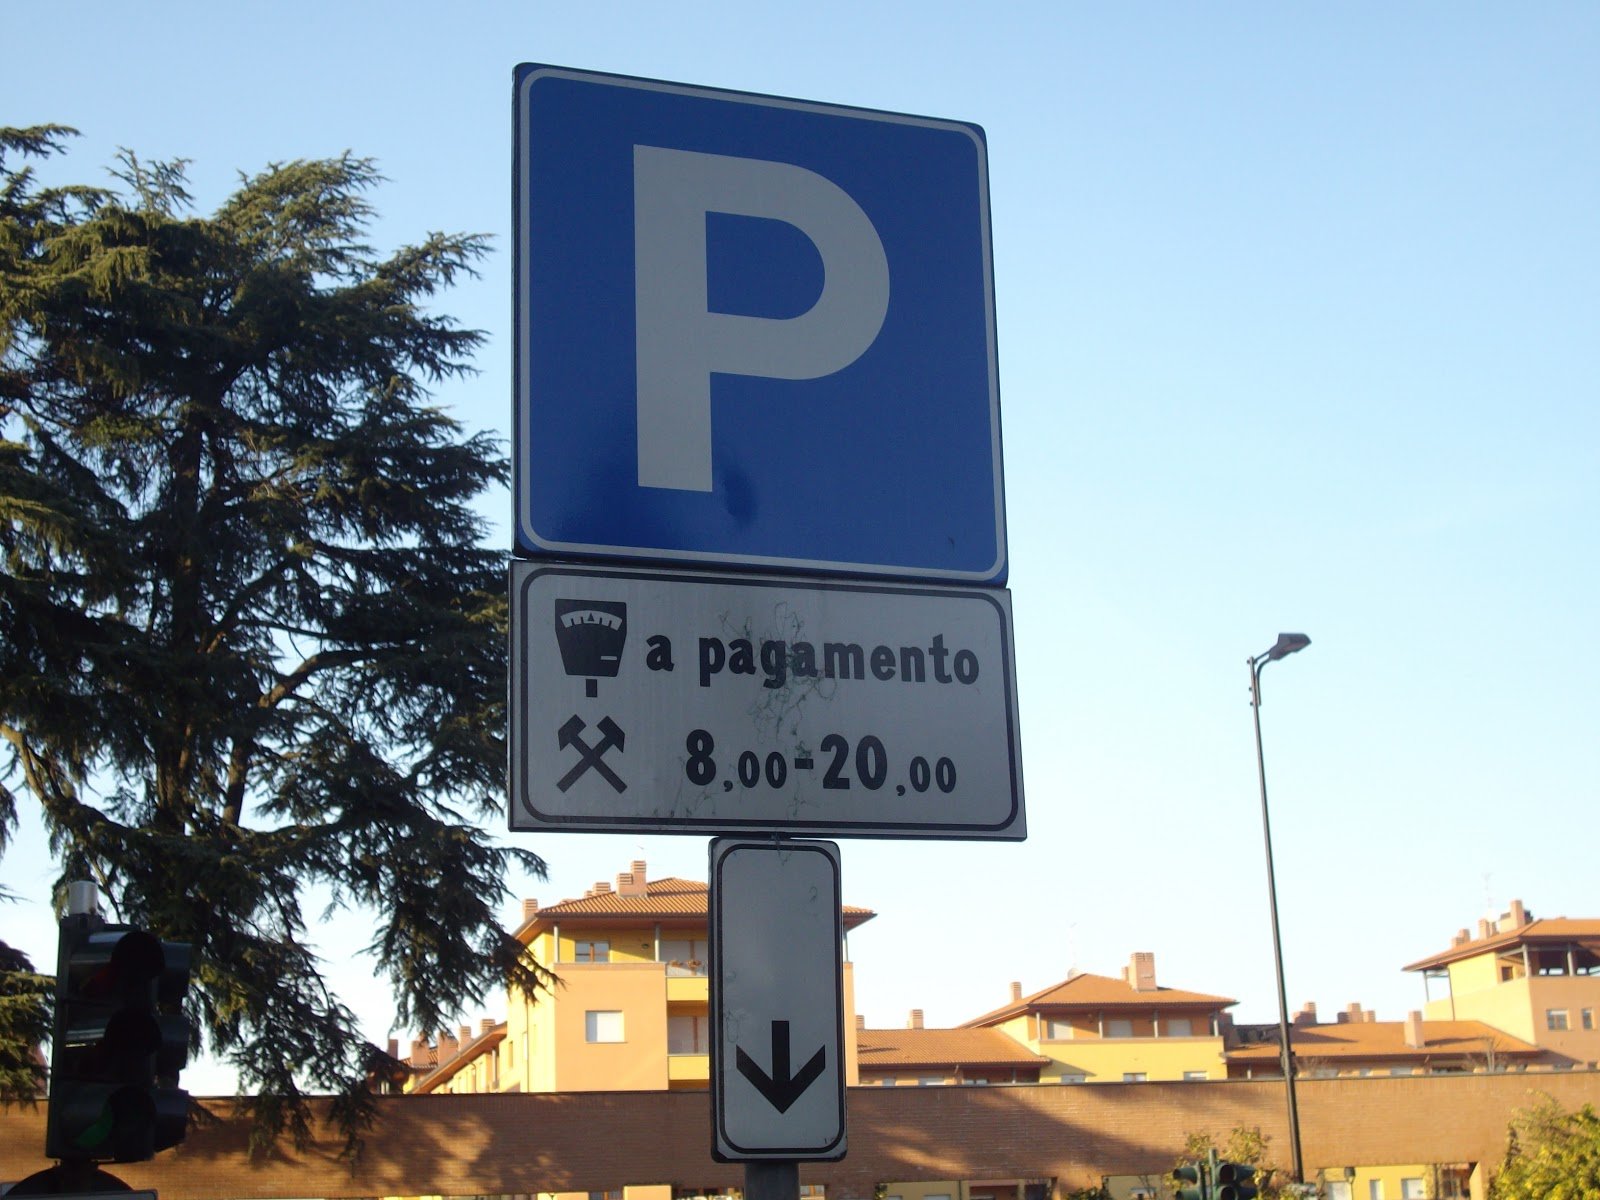 Parcheggi gratis a Tortona dal 7 al 20 agosto